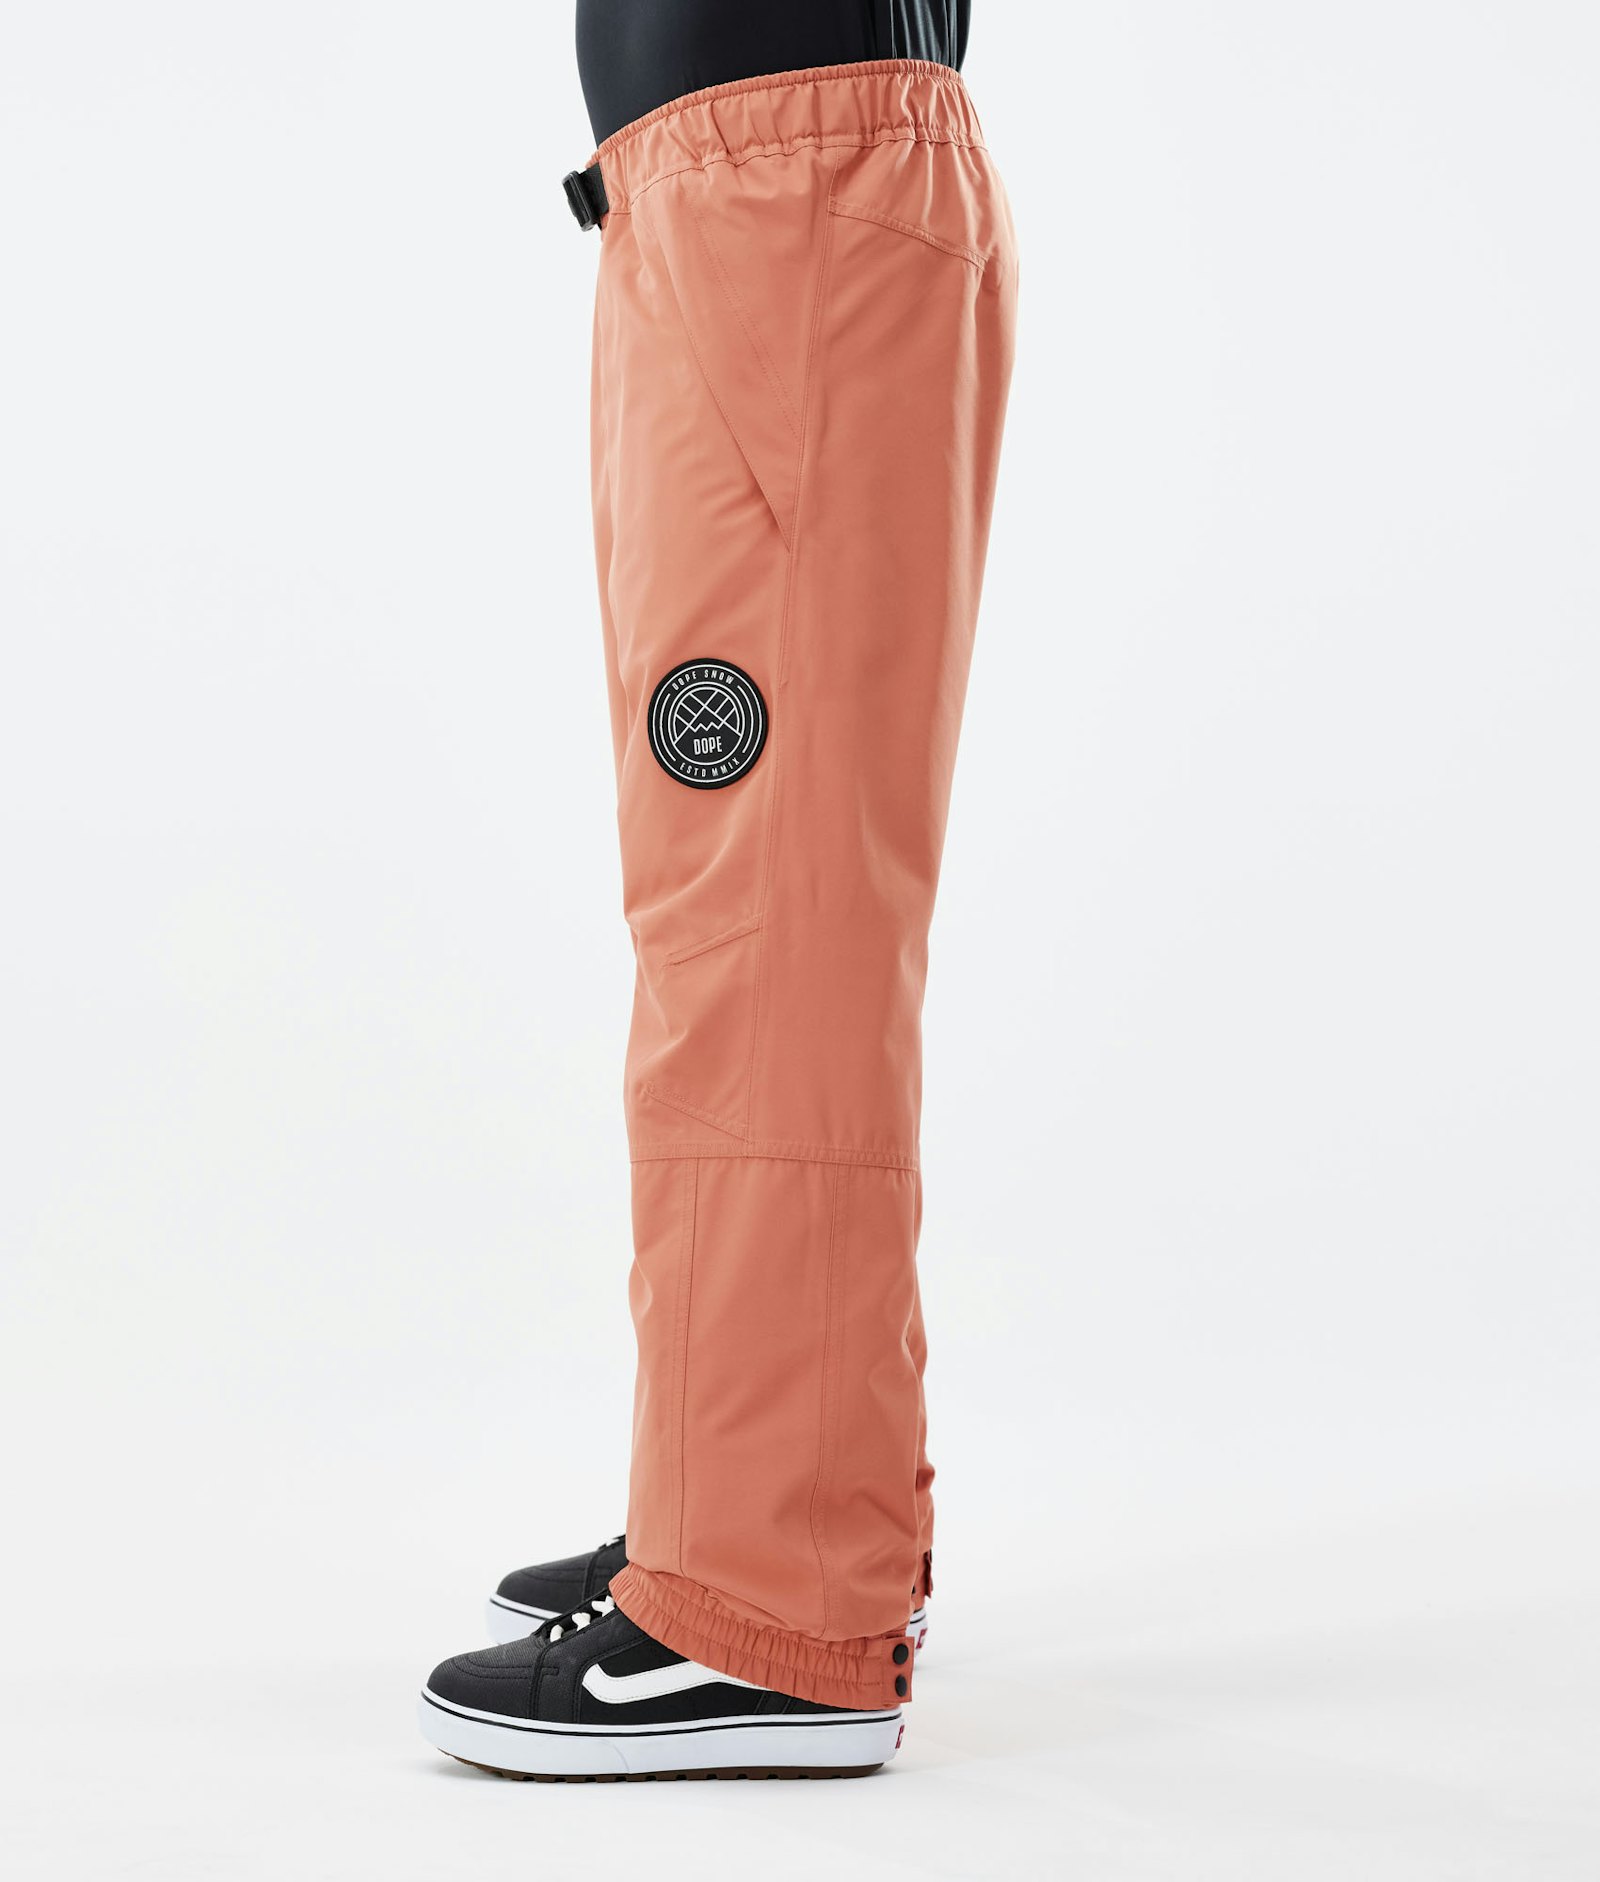 Blizzard 2021 Spodnie Snowboardowe Mężczyźni Peach